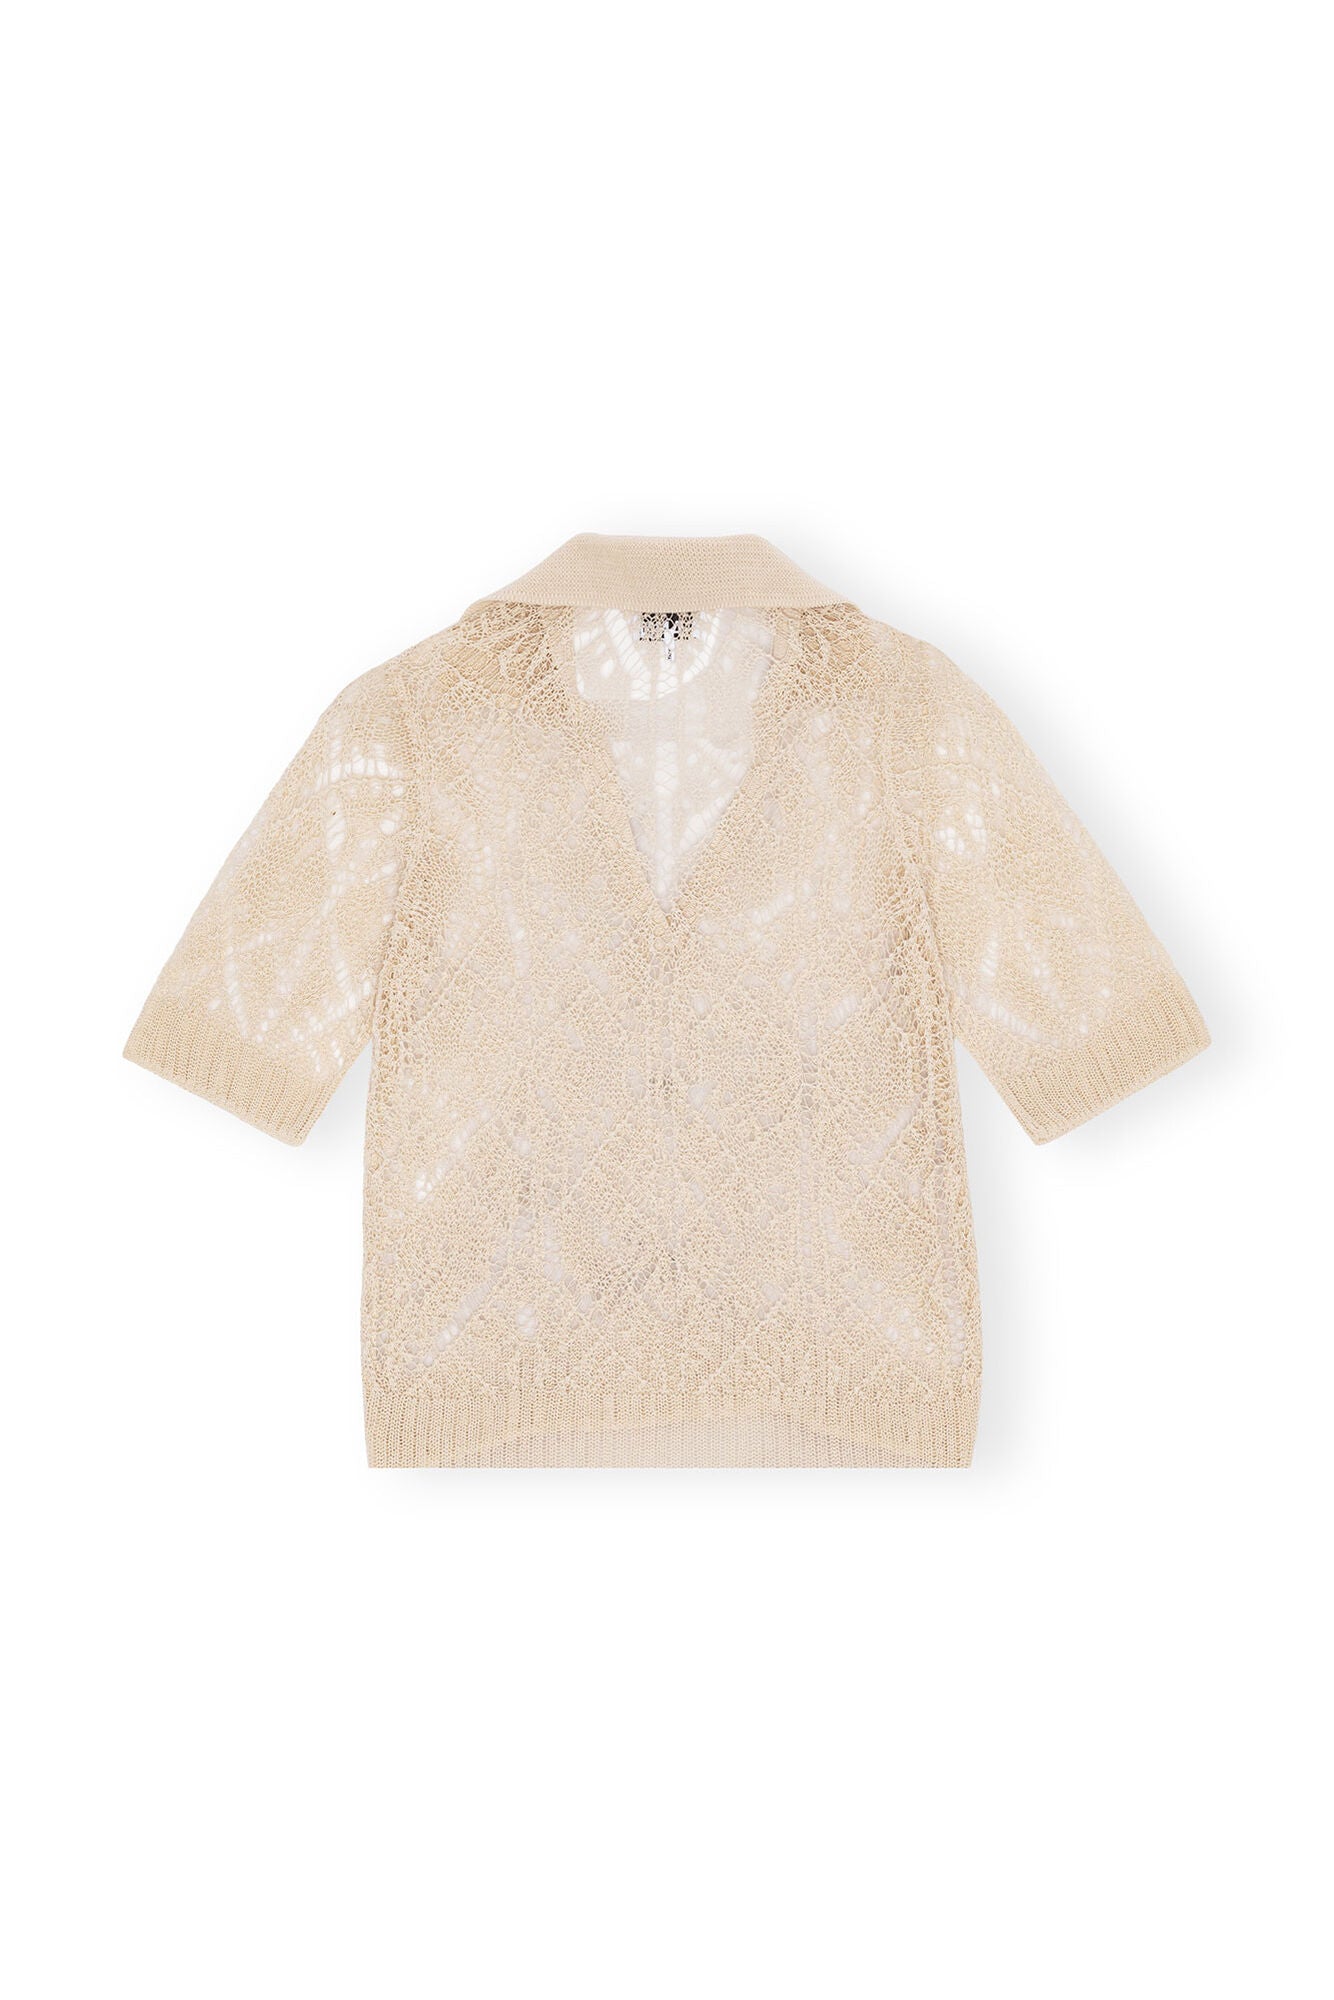 LEO boutique thin cotton lace short sleeve polo egret GANNI